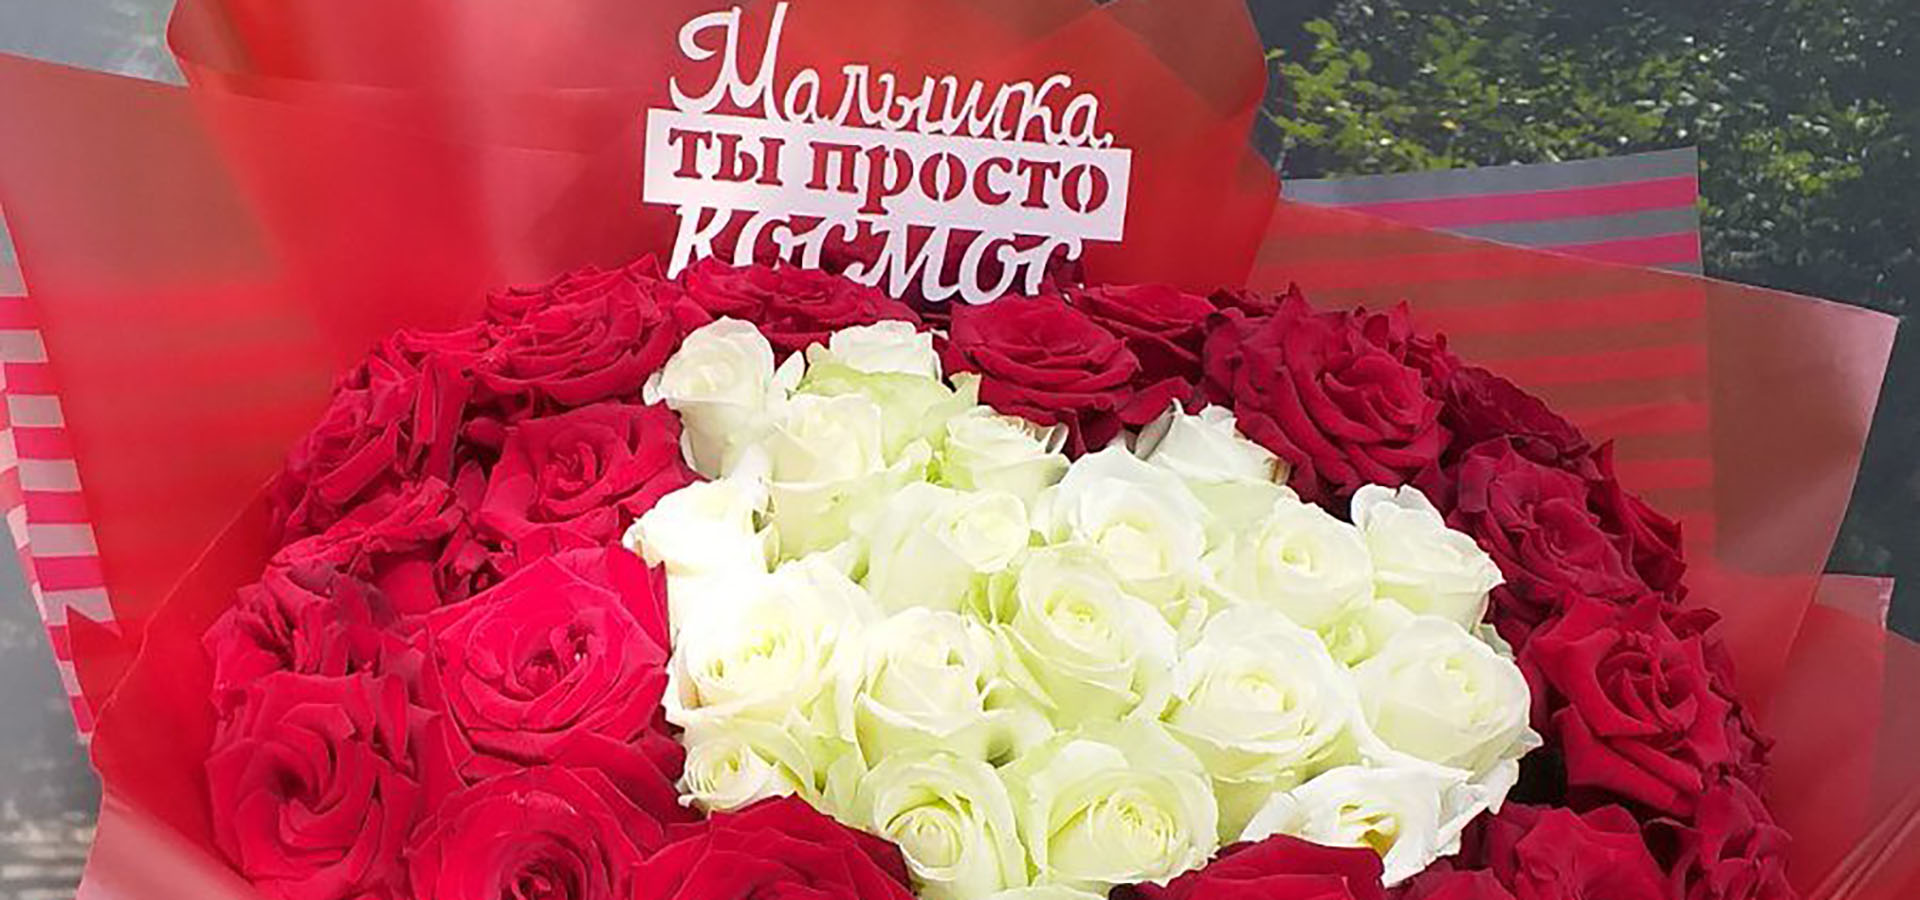 Цветы и подарки на день рождения во Львове